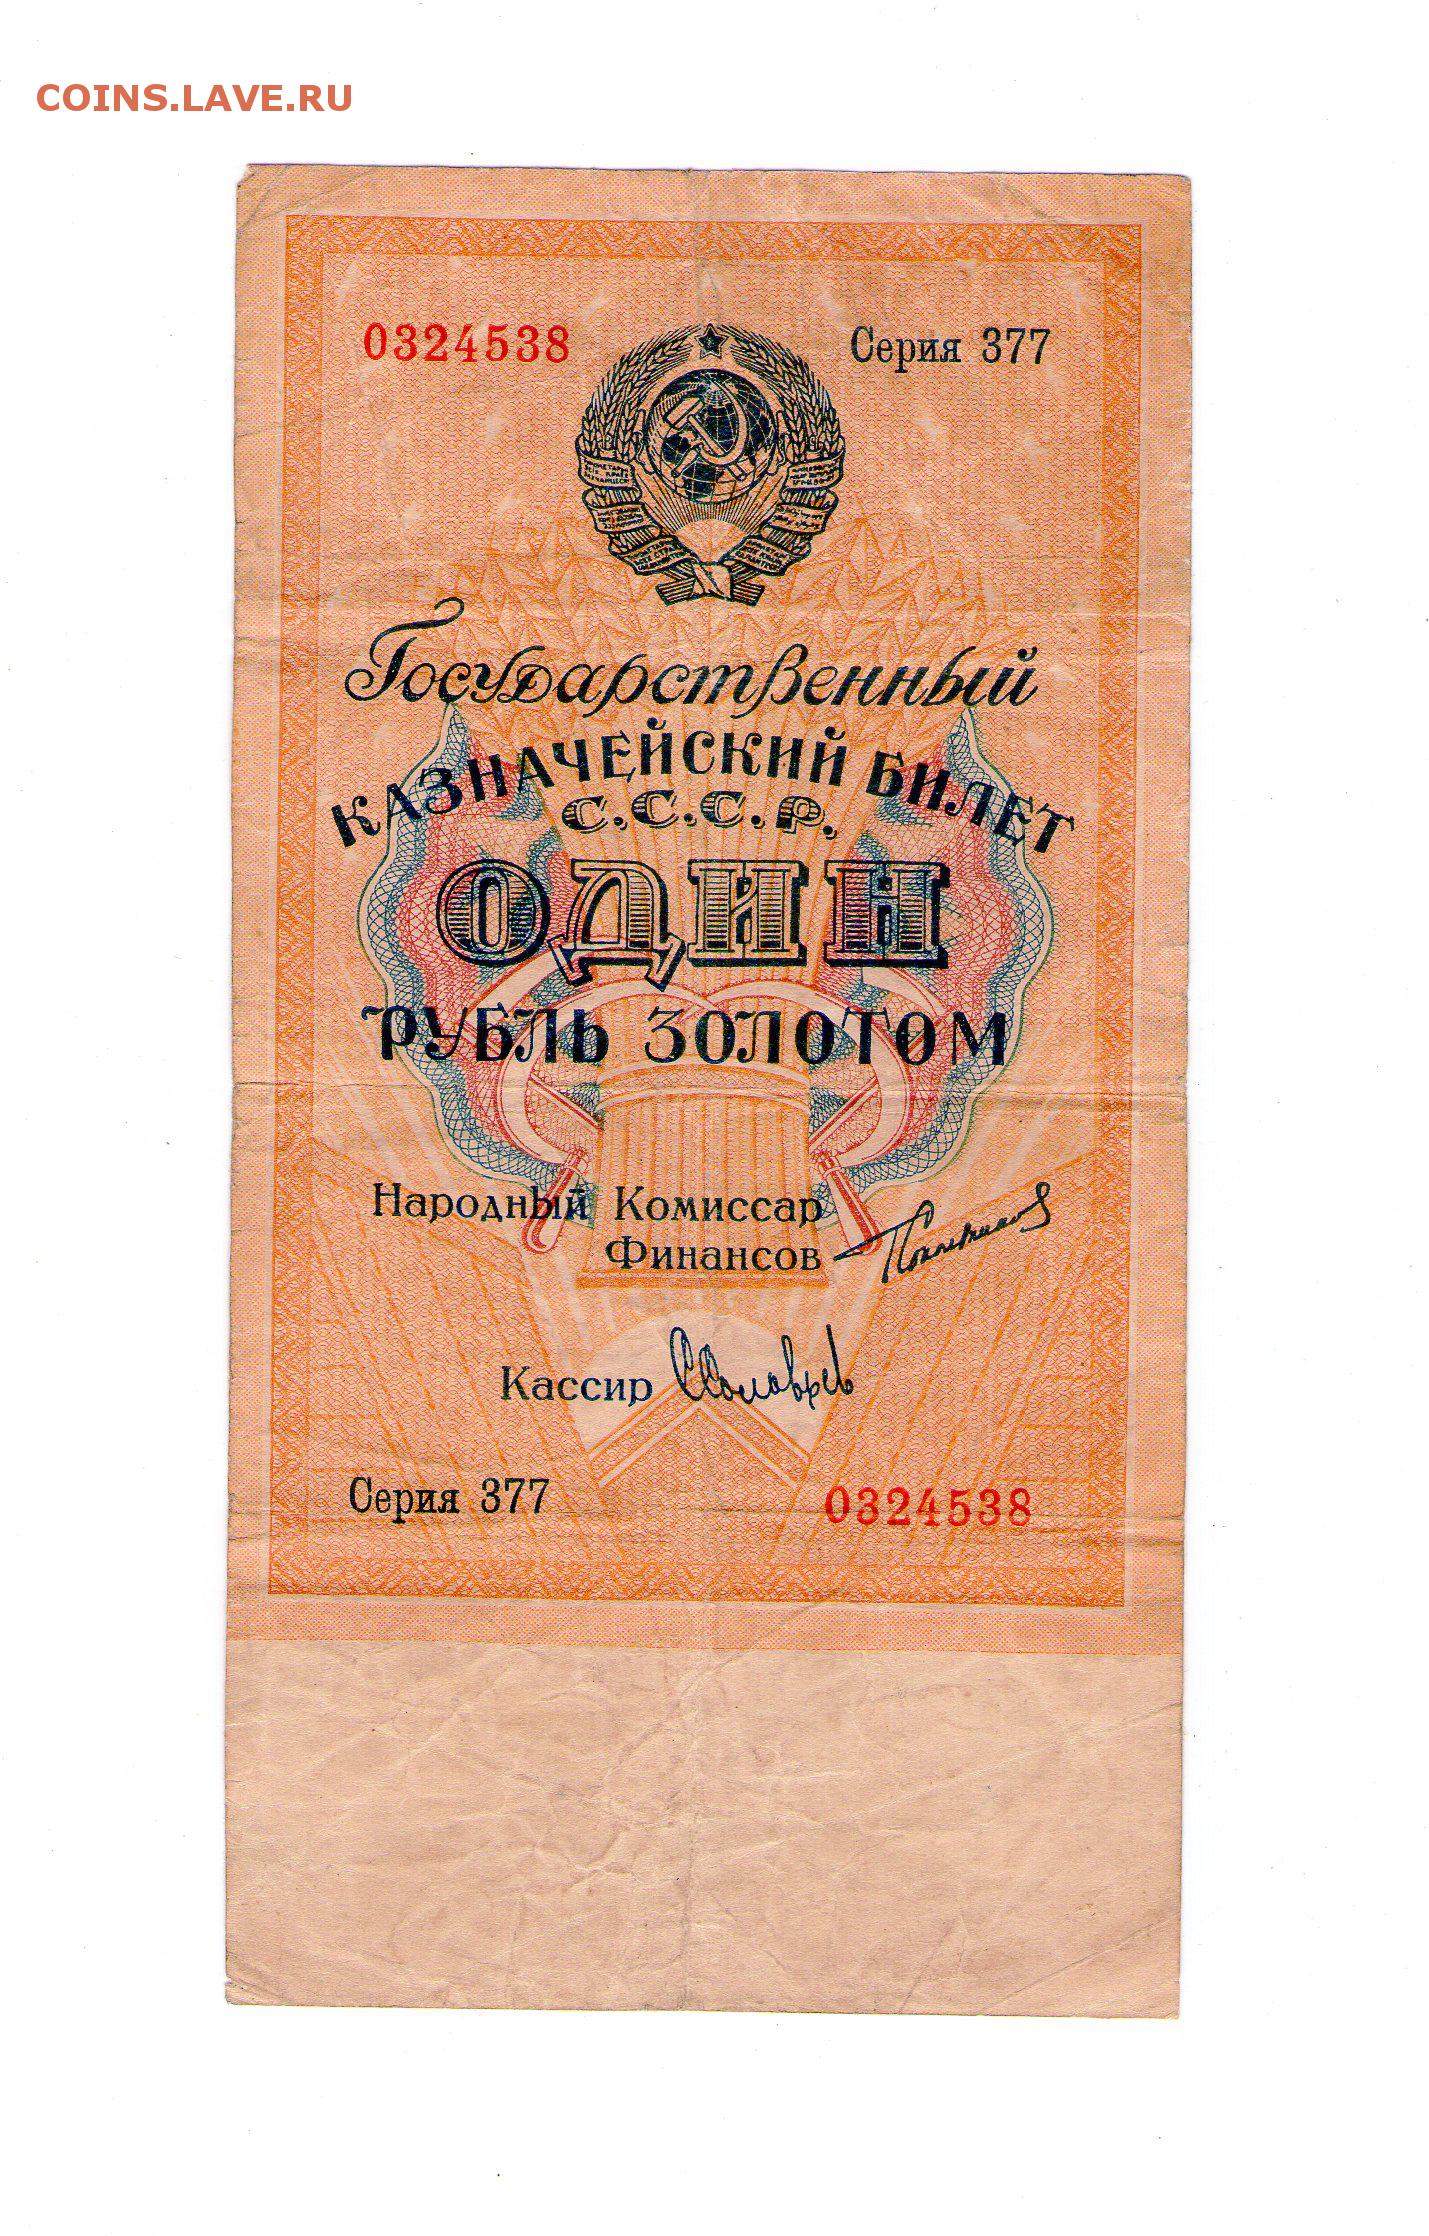 1 Рубль 1928 года золотом